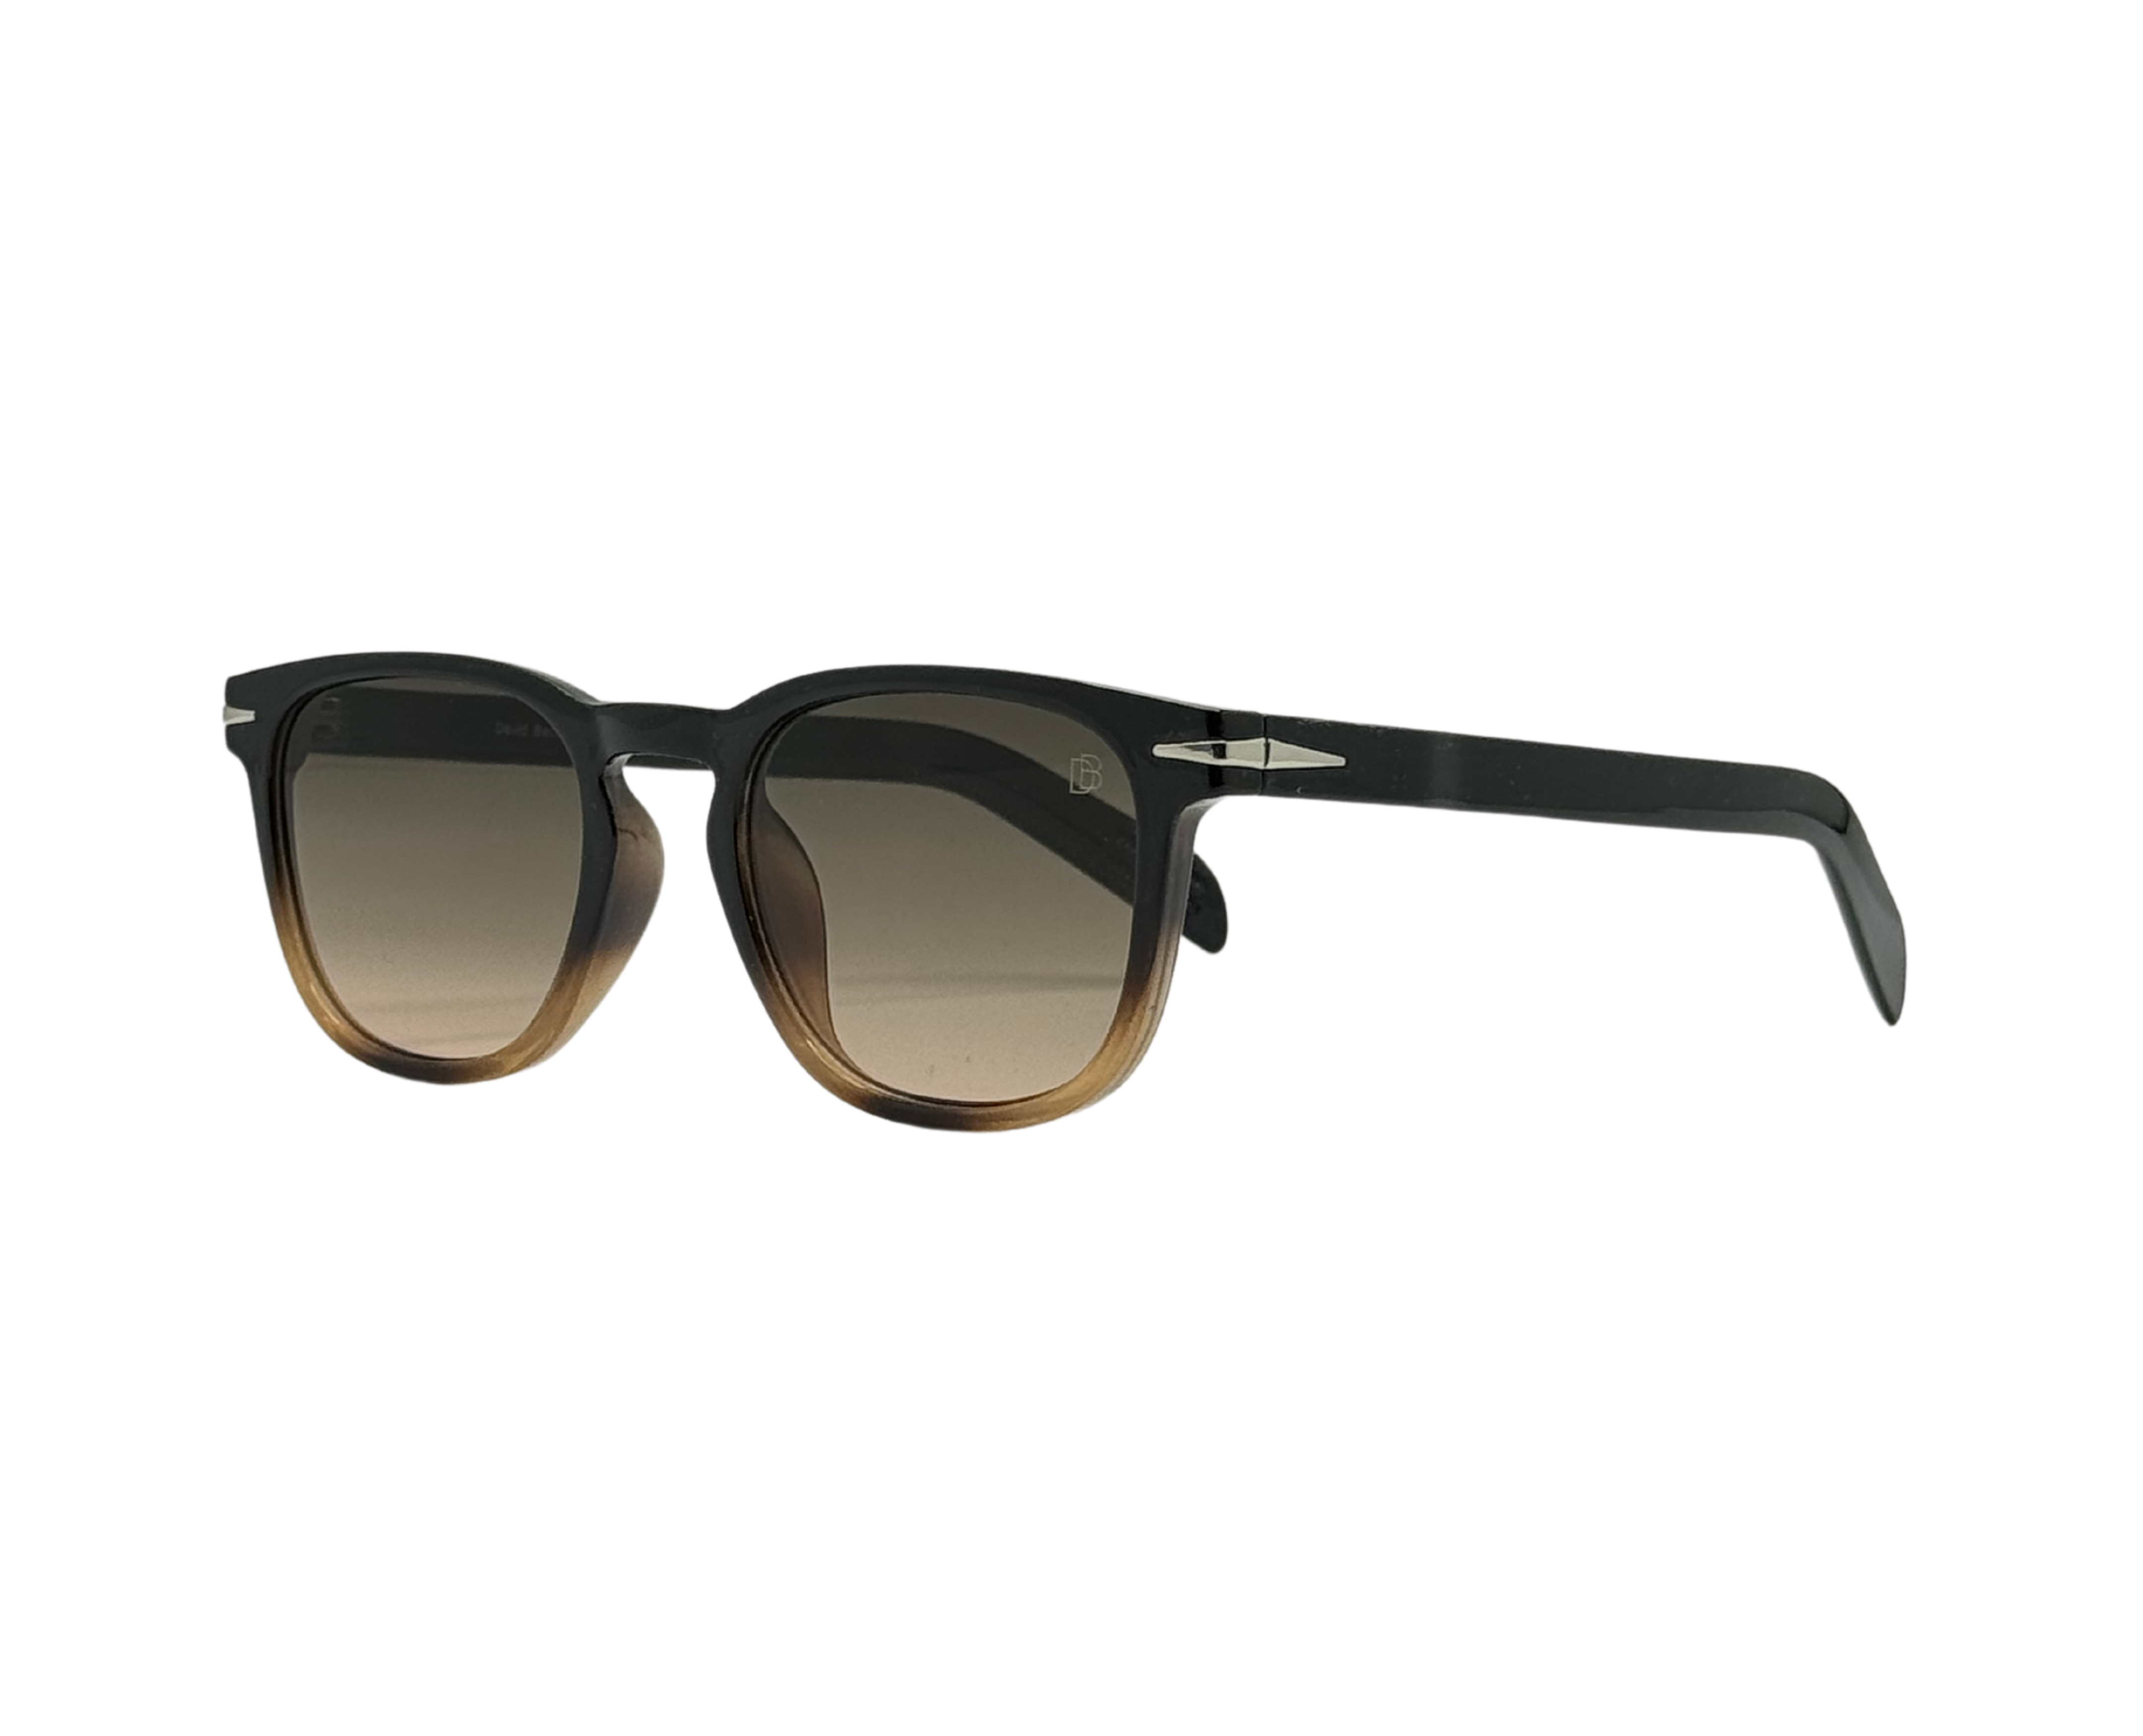 NS Deluxe - 7086 - Tortoise - Sunglasses